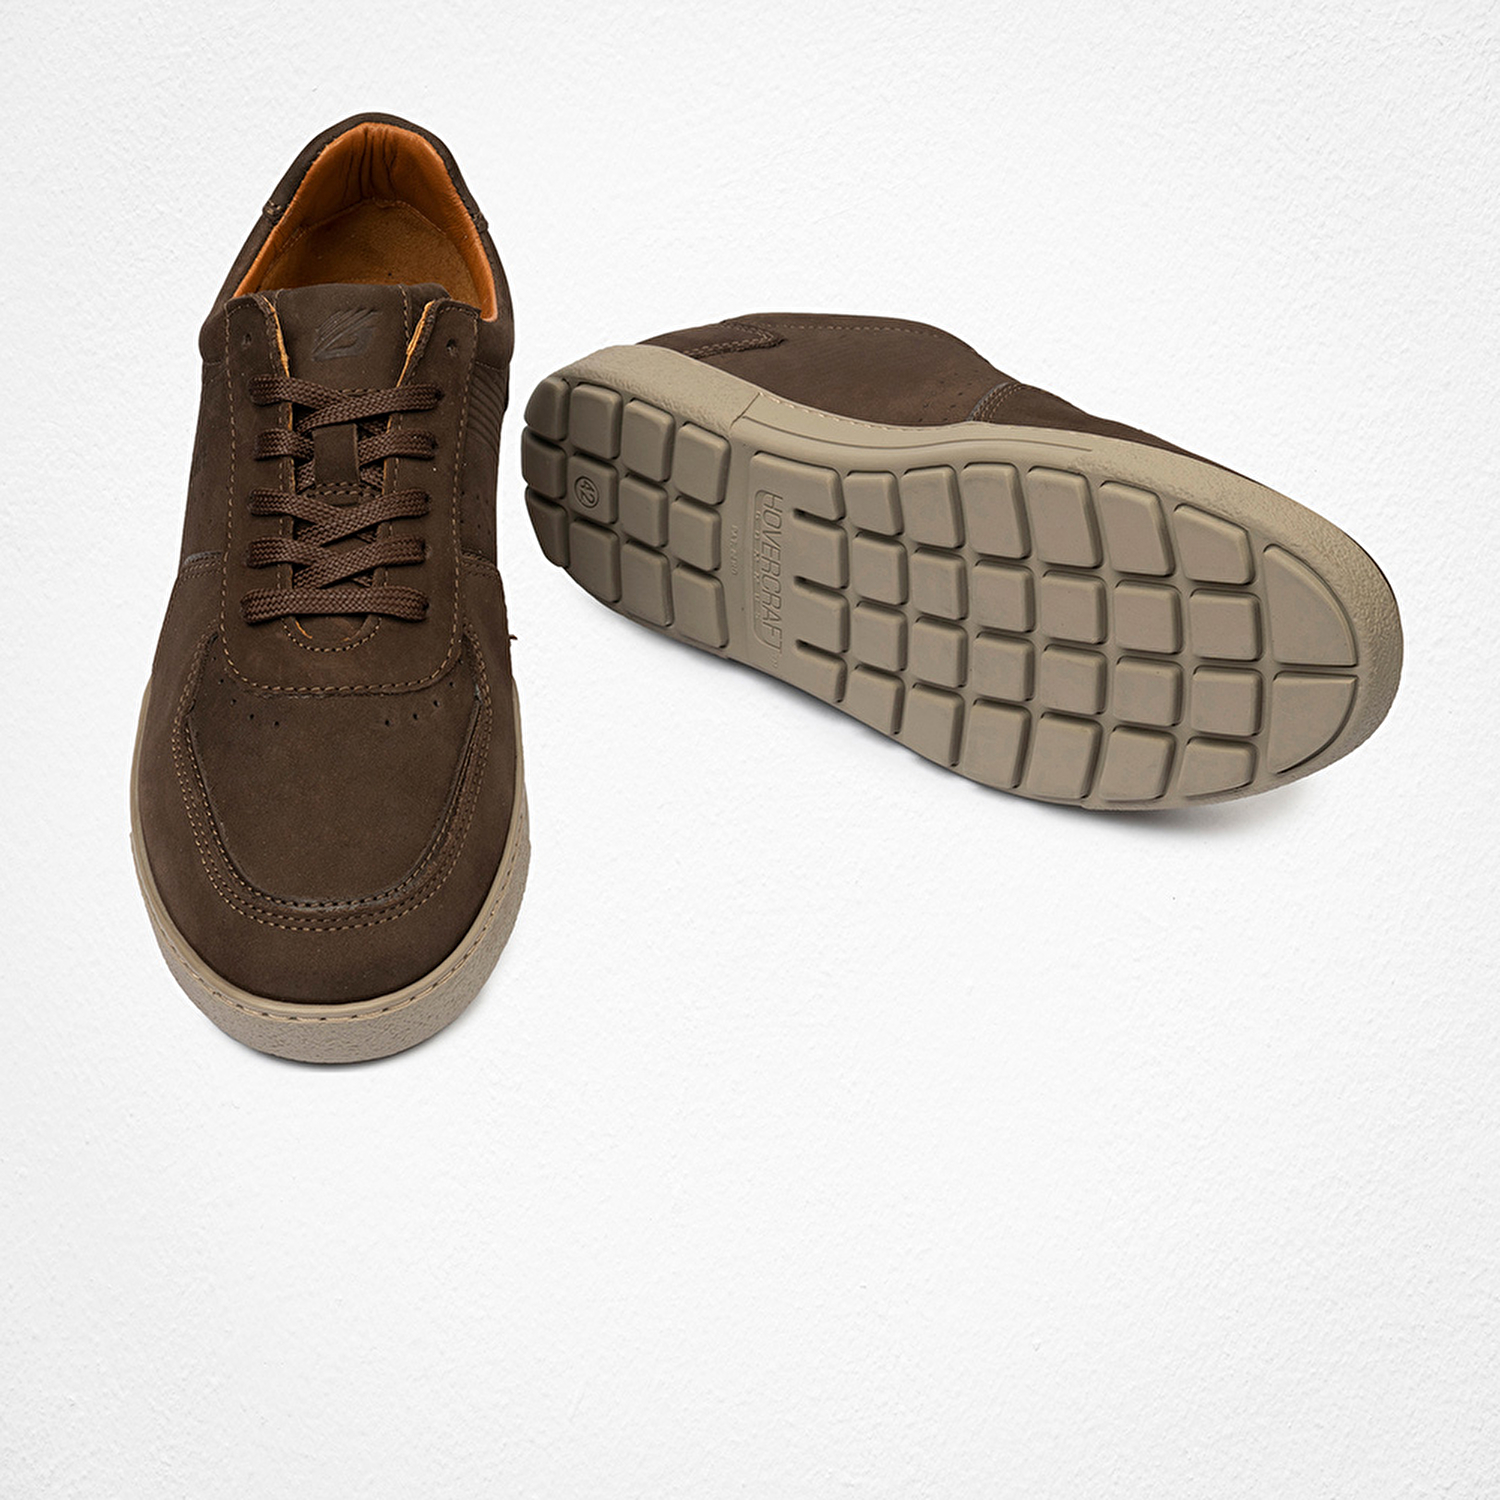 Erkek Kahverengi Hakiki Deri Sneaker Ayakkabı 4Y1HA00124-6